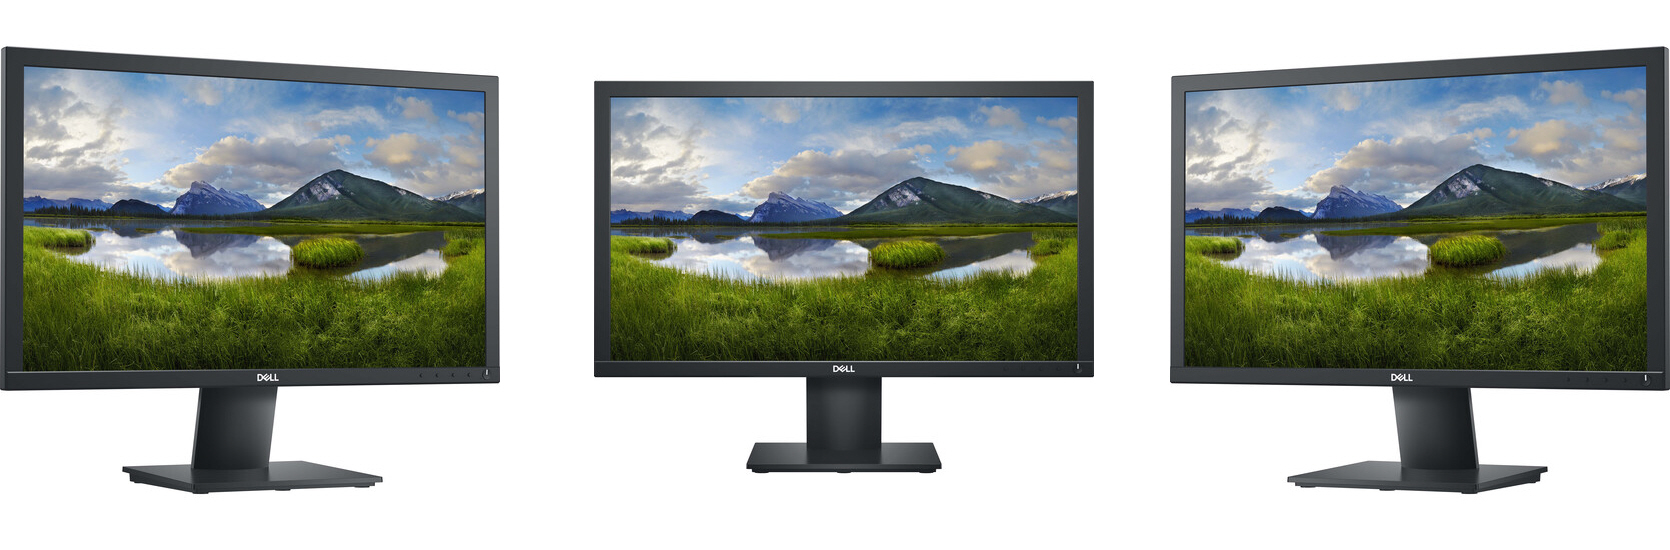 Dell E2216h Monitor